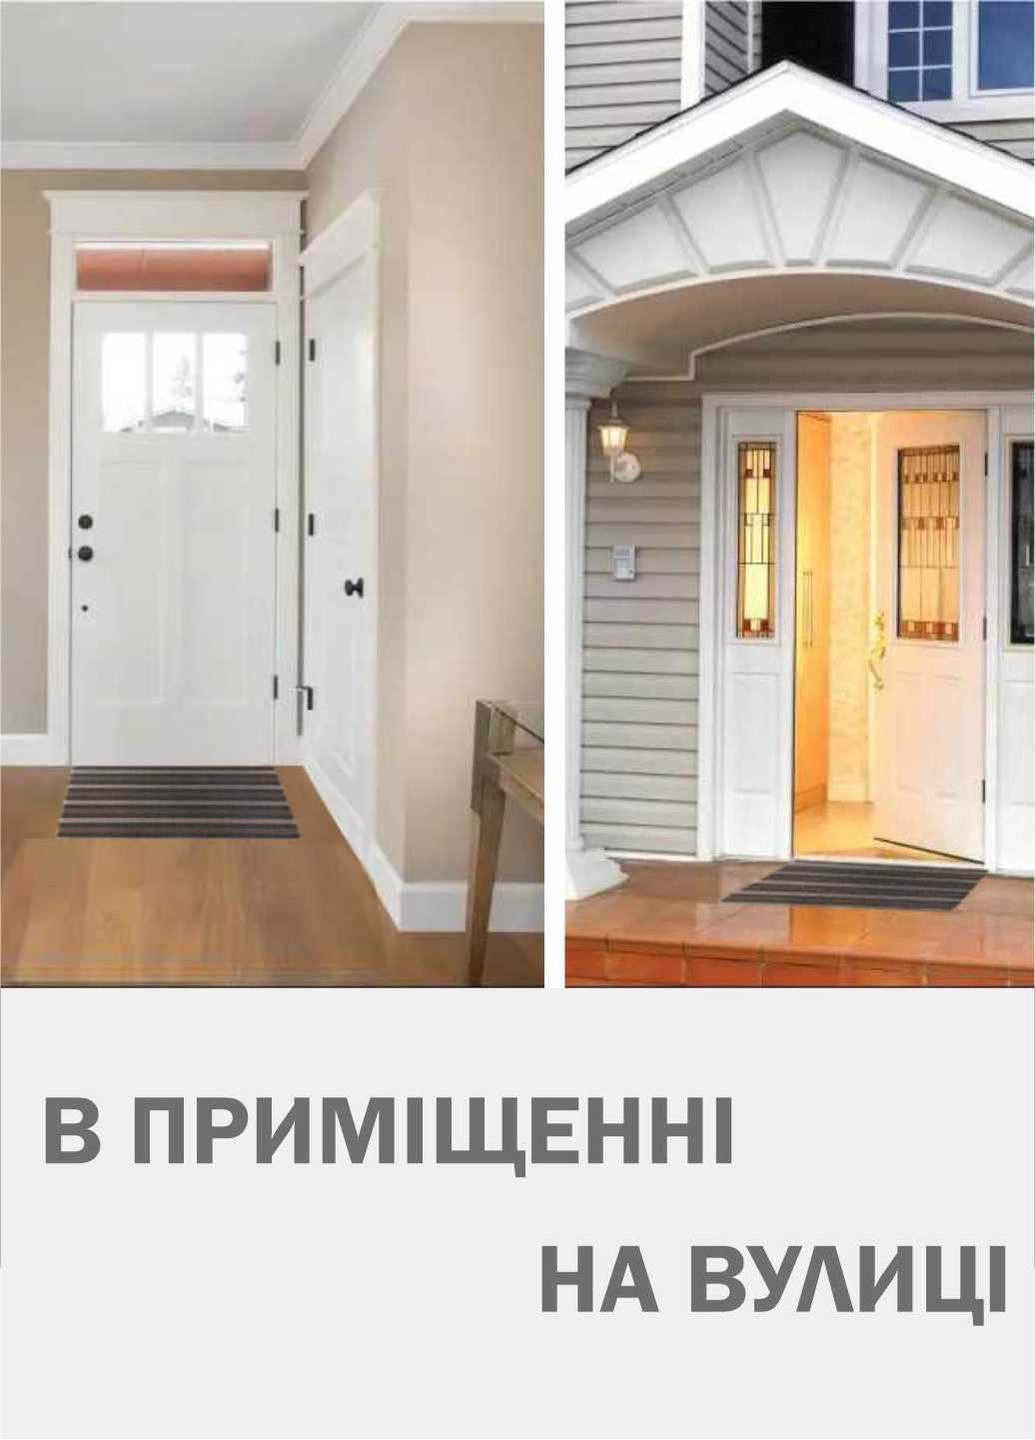 Дверной коврик с петлевой щетиной размером 45 x 75 для внутреннего и наружного входа - Коричневая полоска Lovely Svi (254545880)